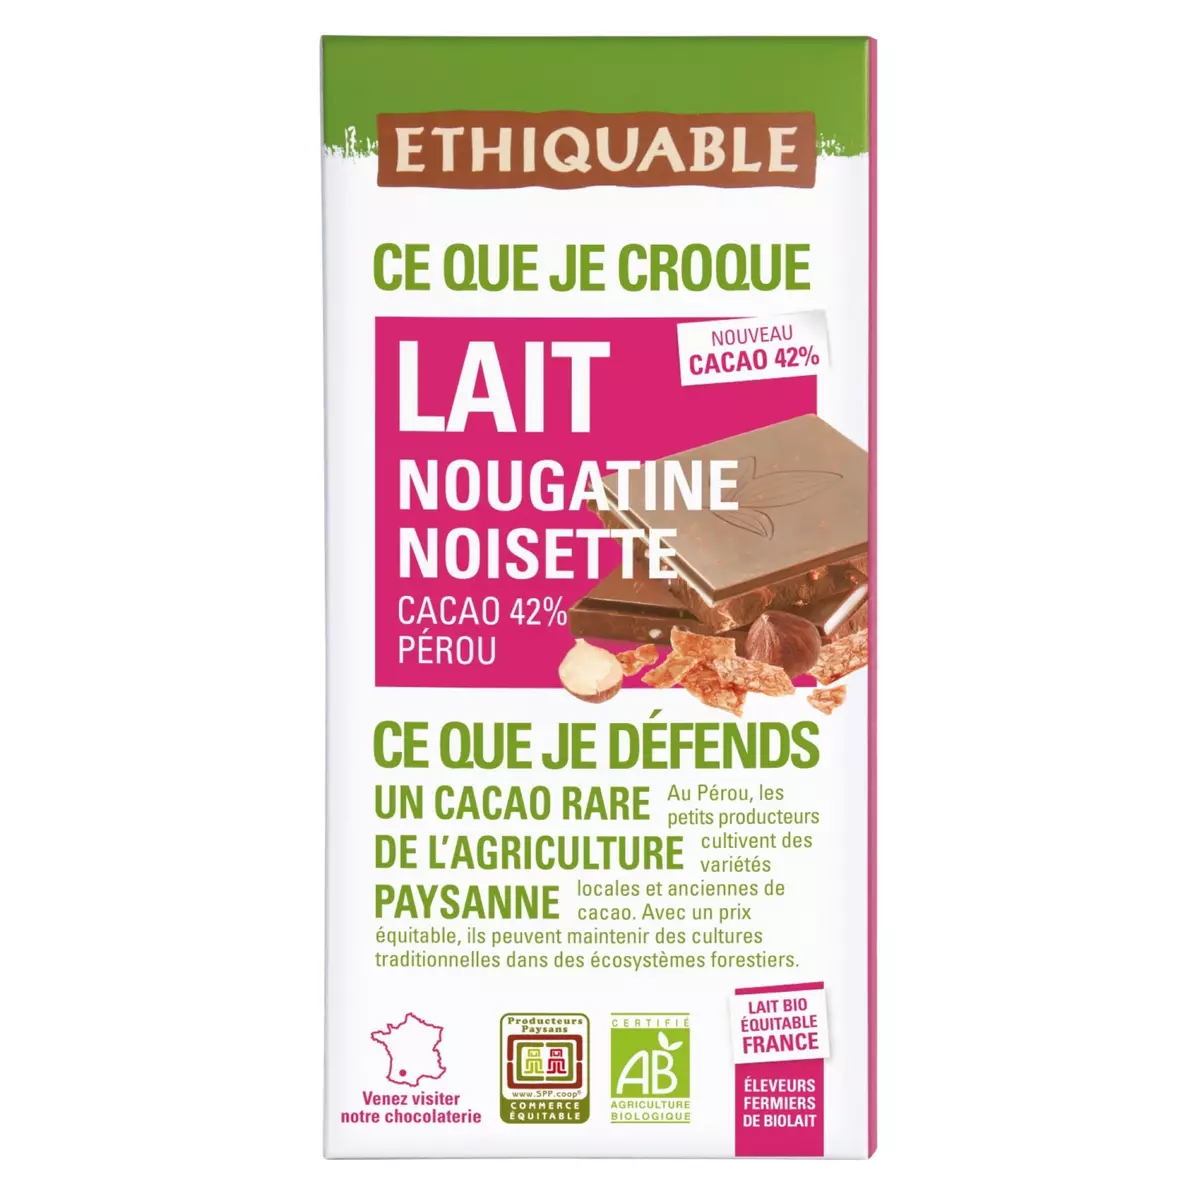 ETHIQUABLE Tablette de chocolat au lait bio équitable nougatine et noisettes cacao 42% Pérou 1 pièce 100g